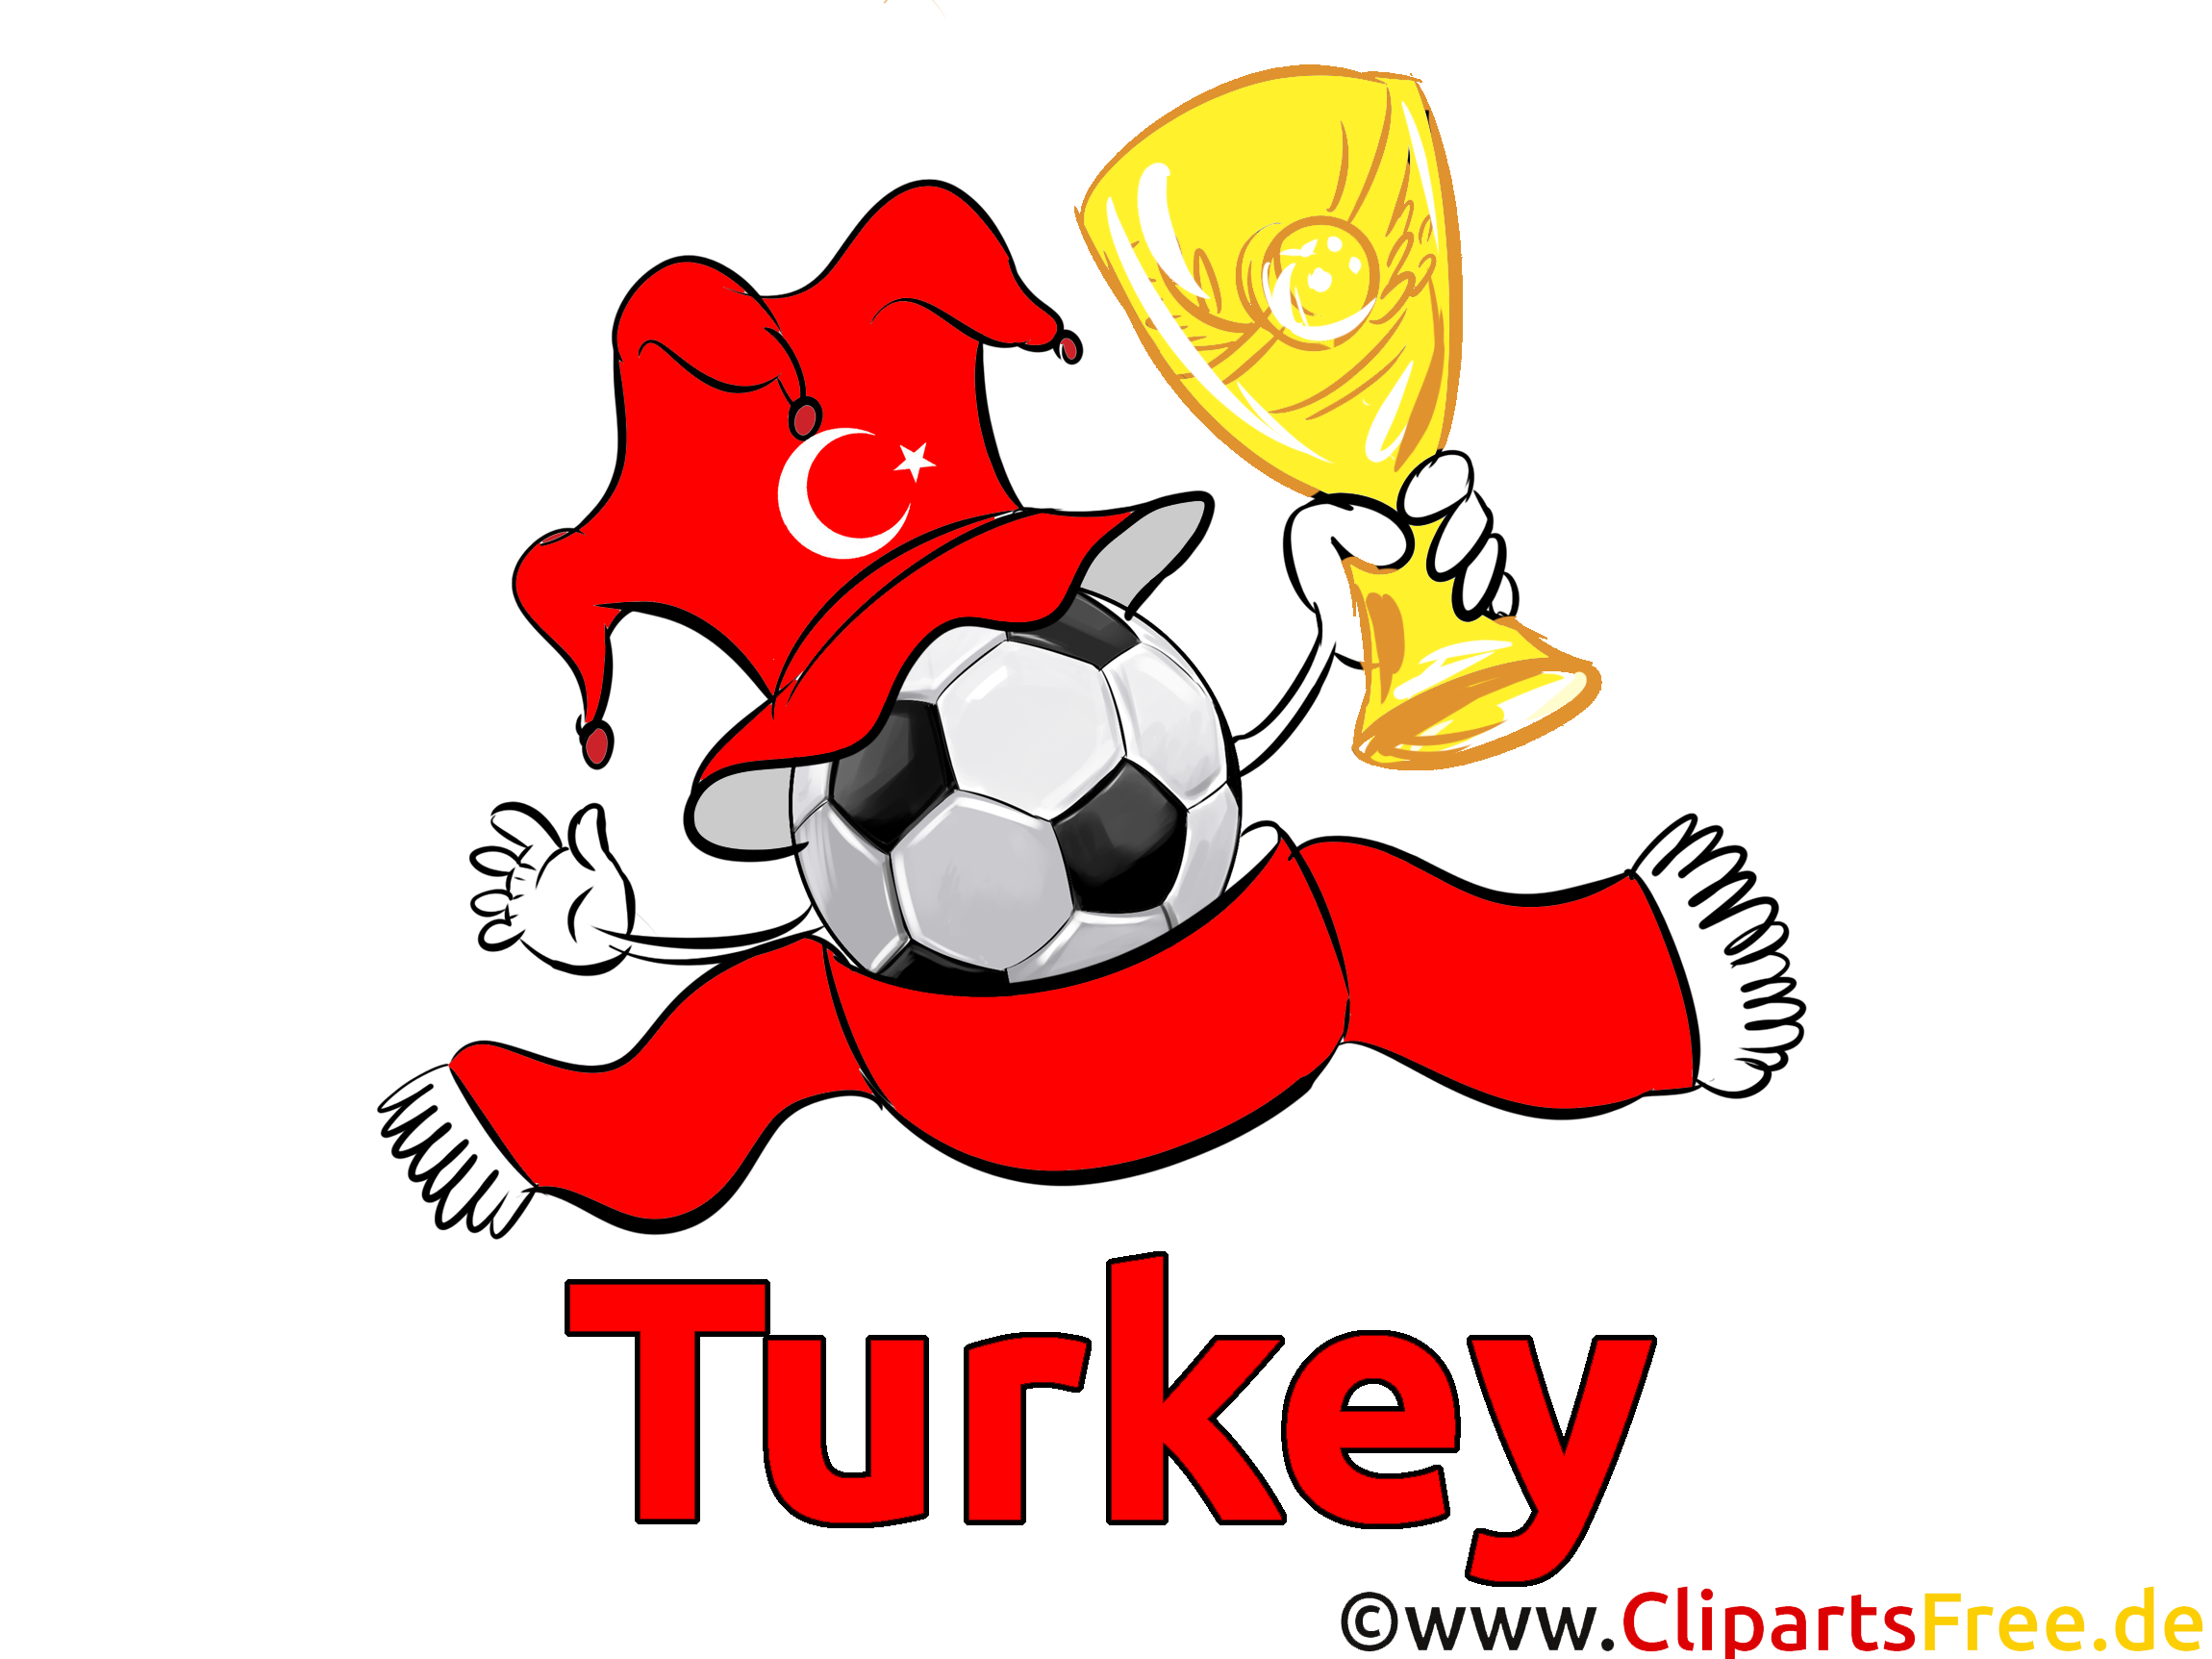 Télécharger Turquie Soccer Images gratuitement